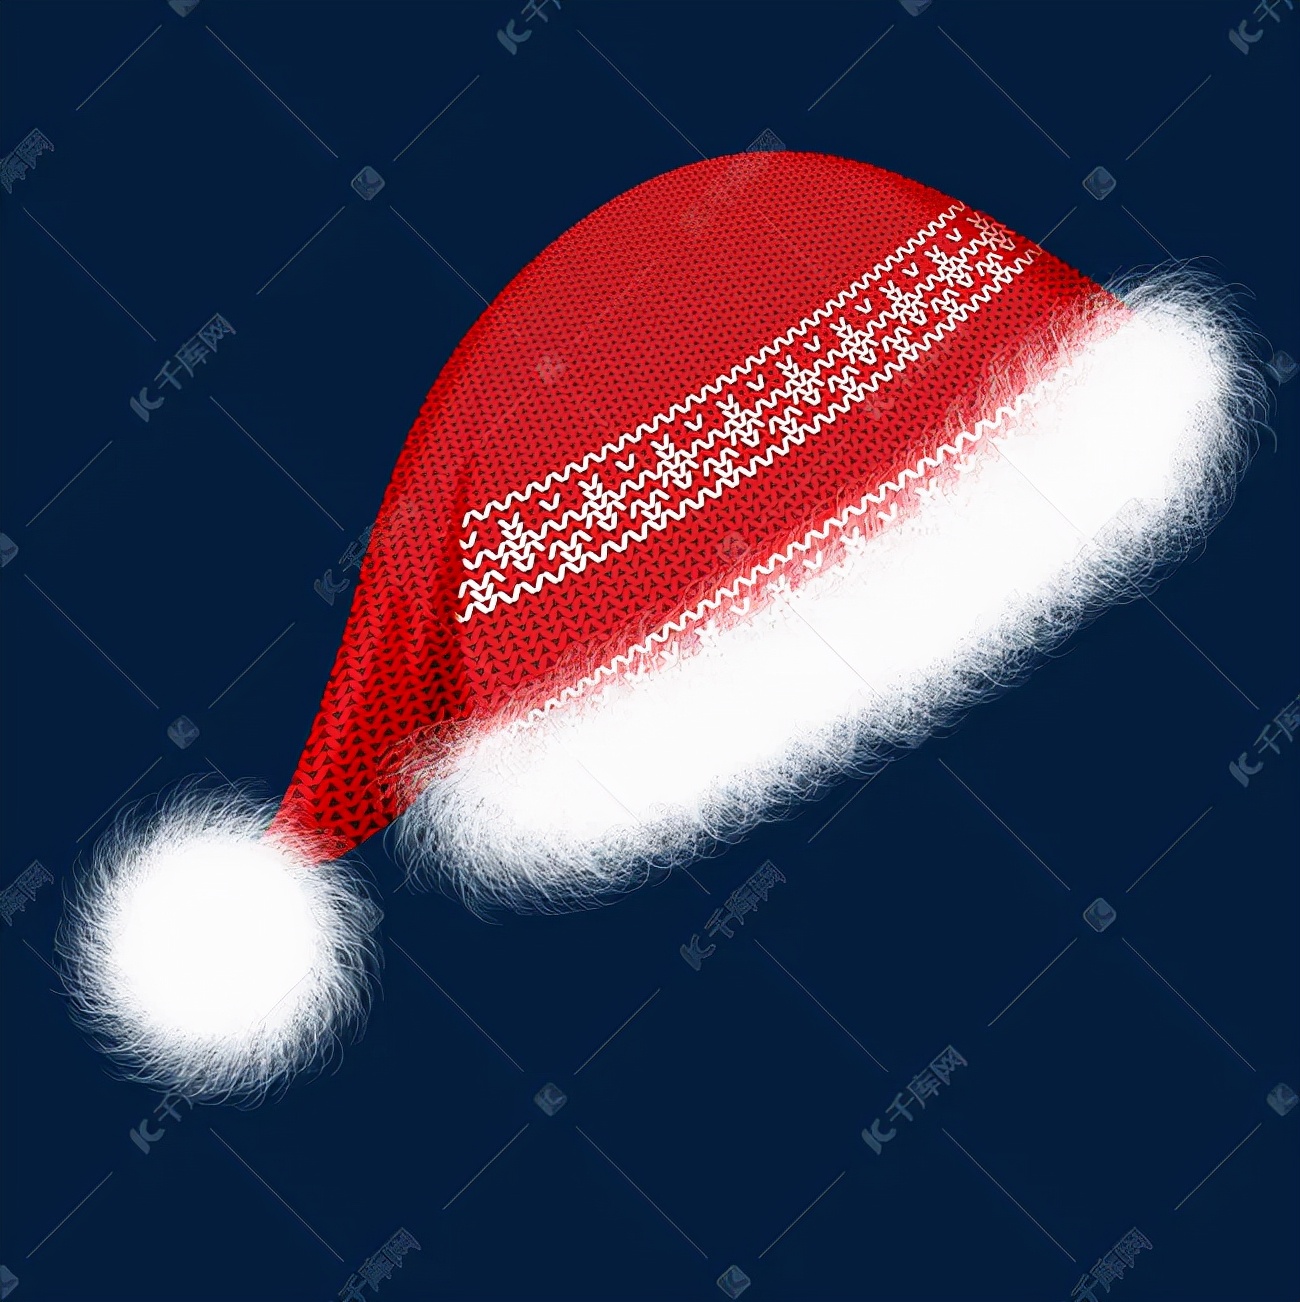 叮铃铃，你的圣诞帽、圣诞壁纸已送达~快来领取你的圣诞礼物